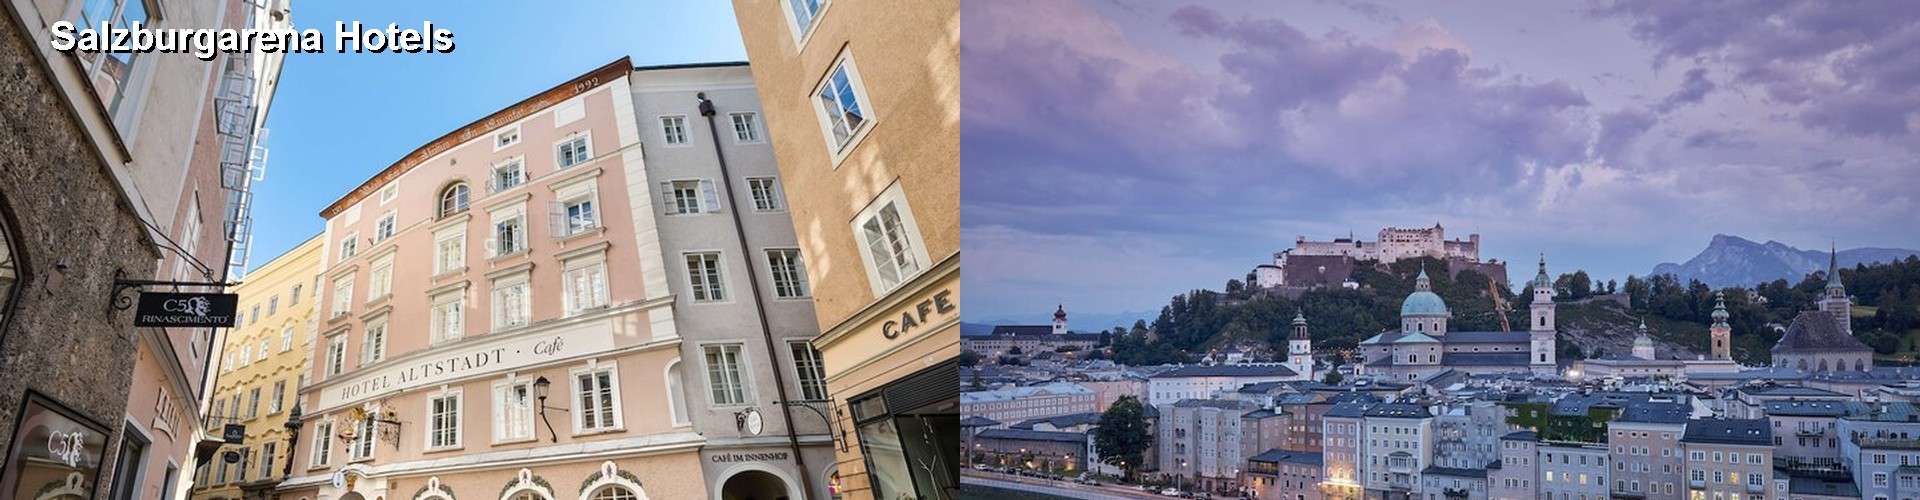 5 Best Hotels near Salzburgarena